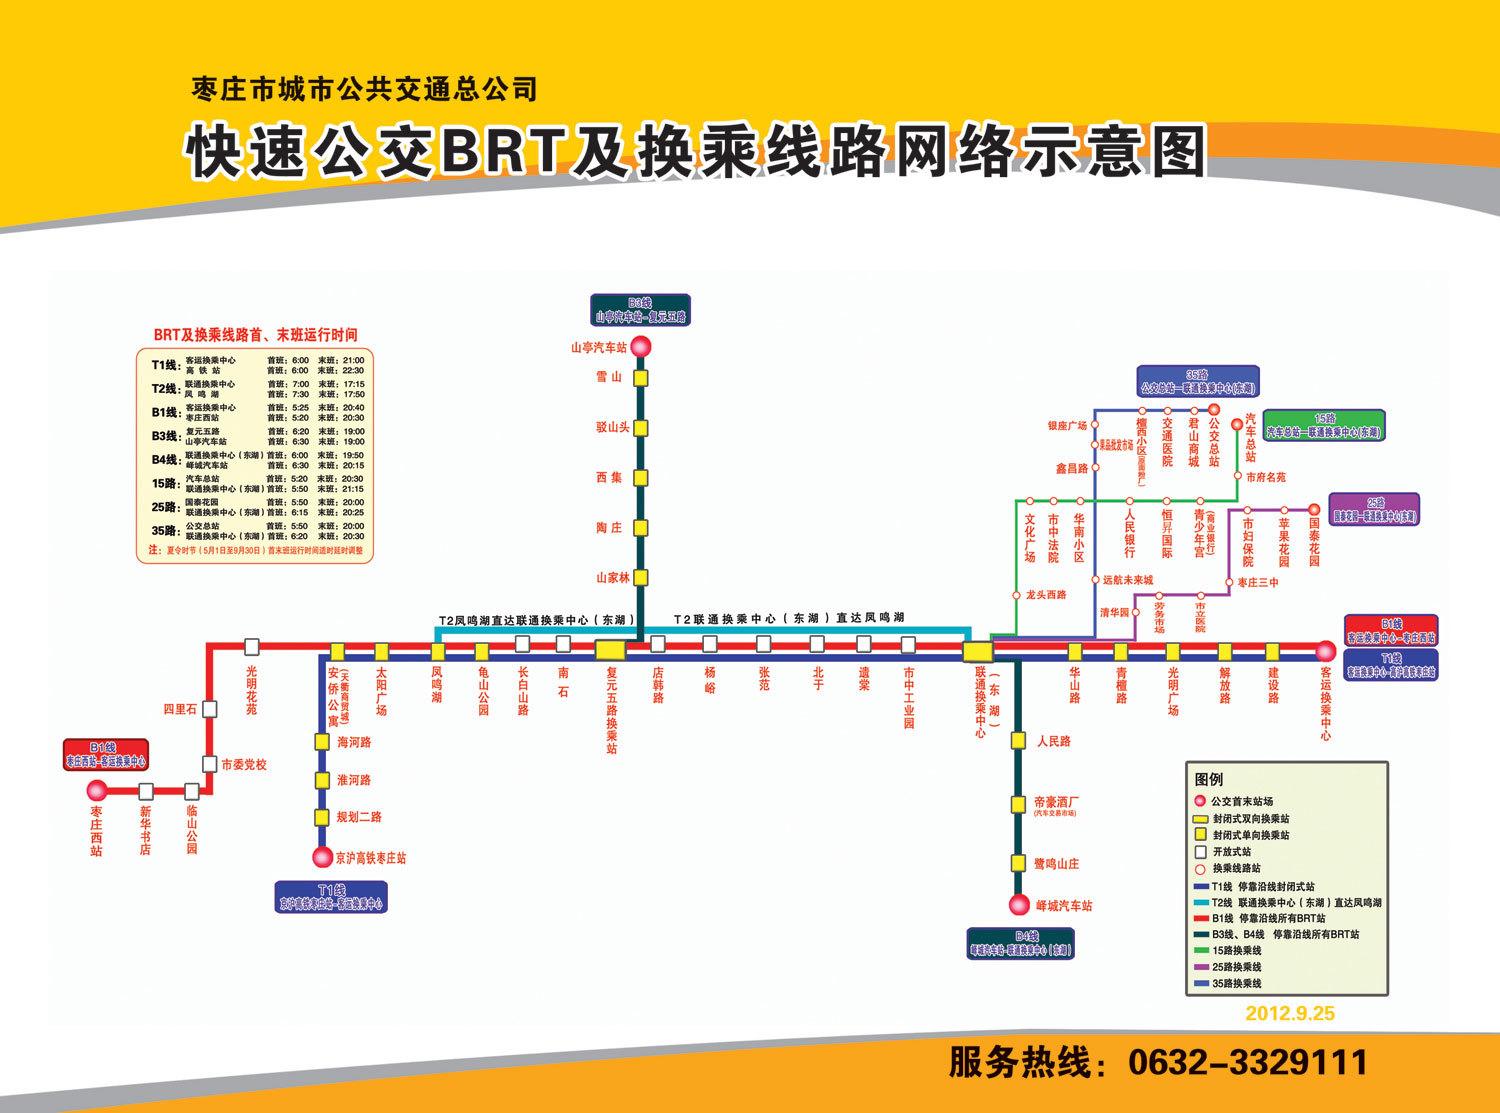 2020年3月7日起南京江宁区公交线路调整- 南京本地宝